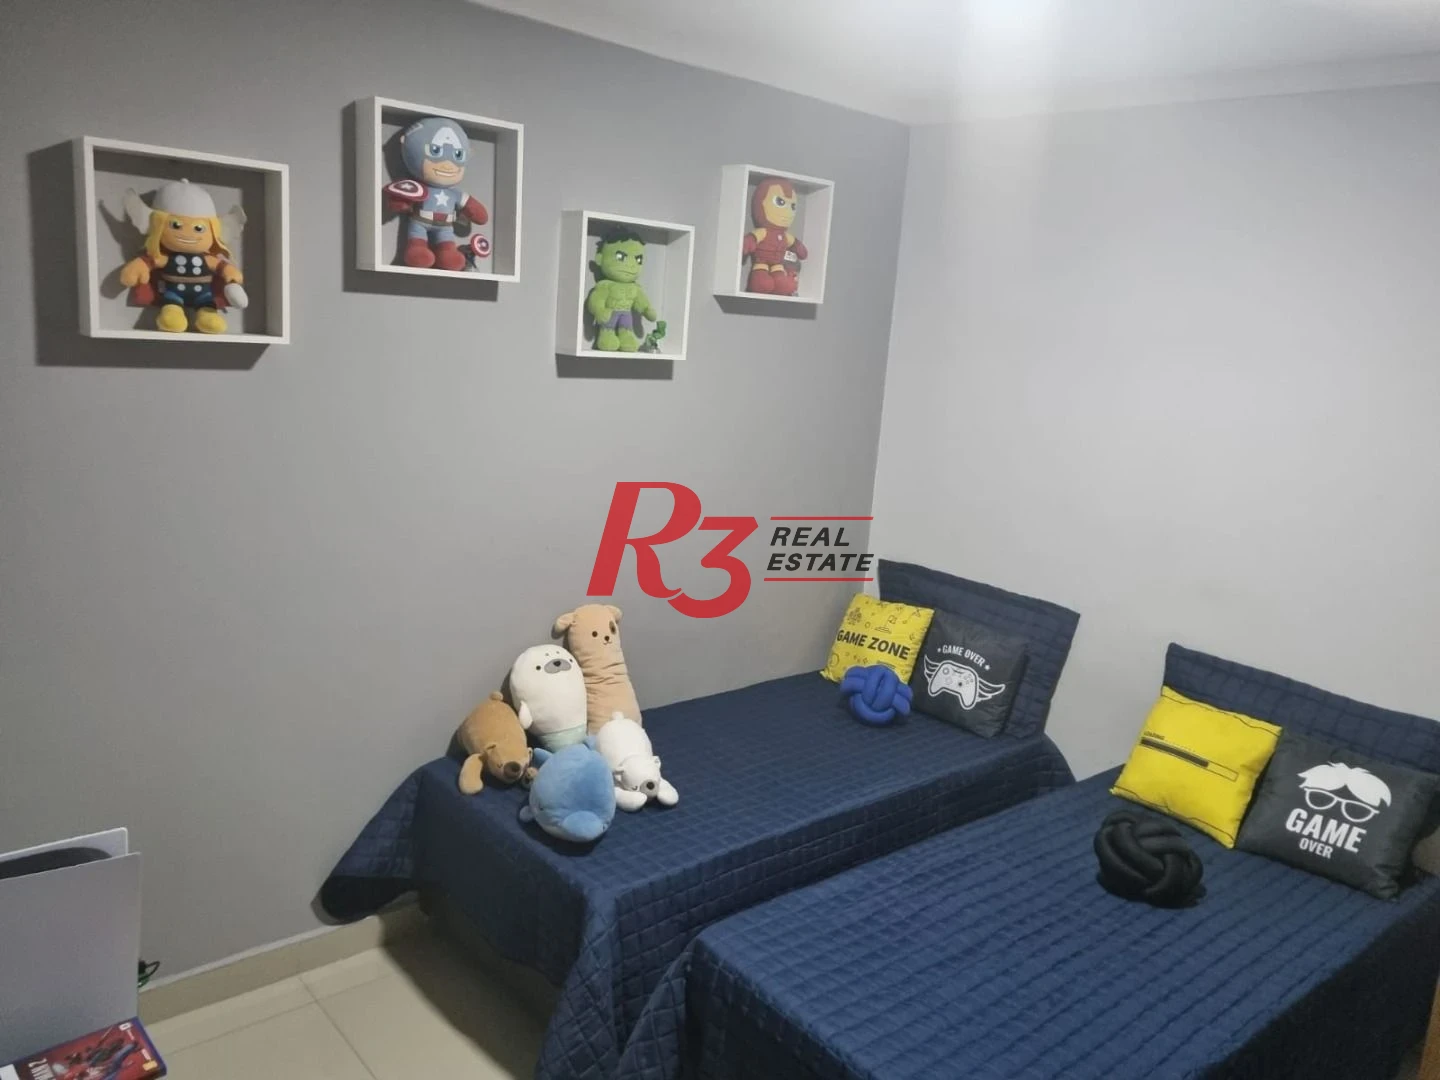 Sobrado com 3 dormitórios à venda, 90 m² por R$ 380.000,00 - Caneleira - Santos/SP